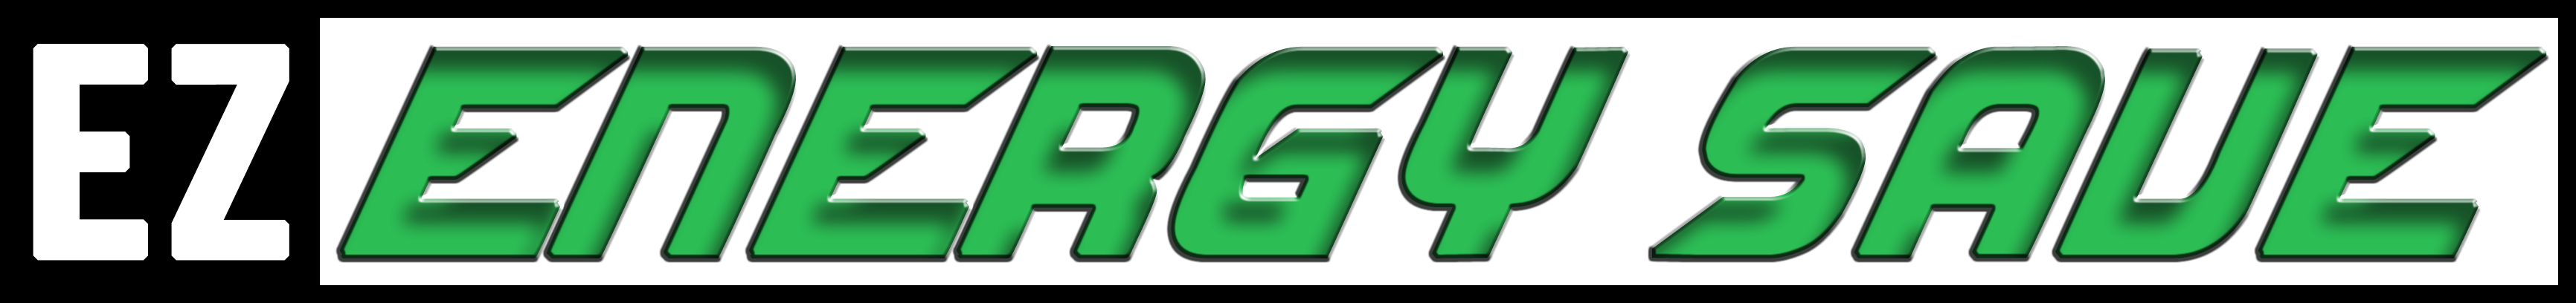 EzEnergySave logo